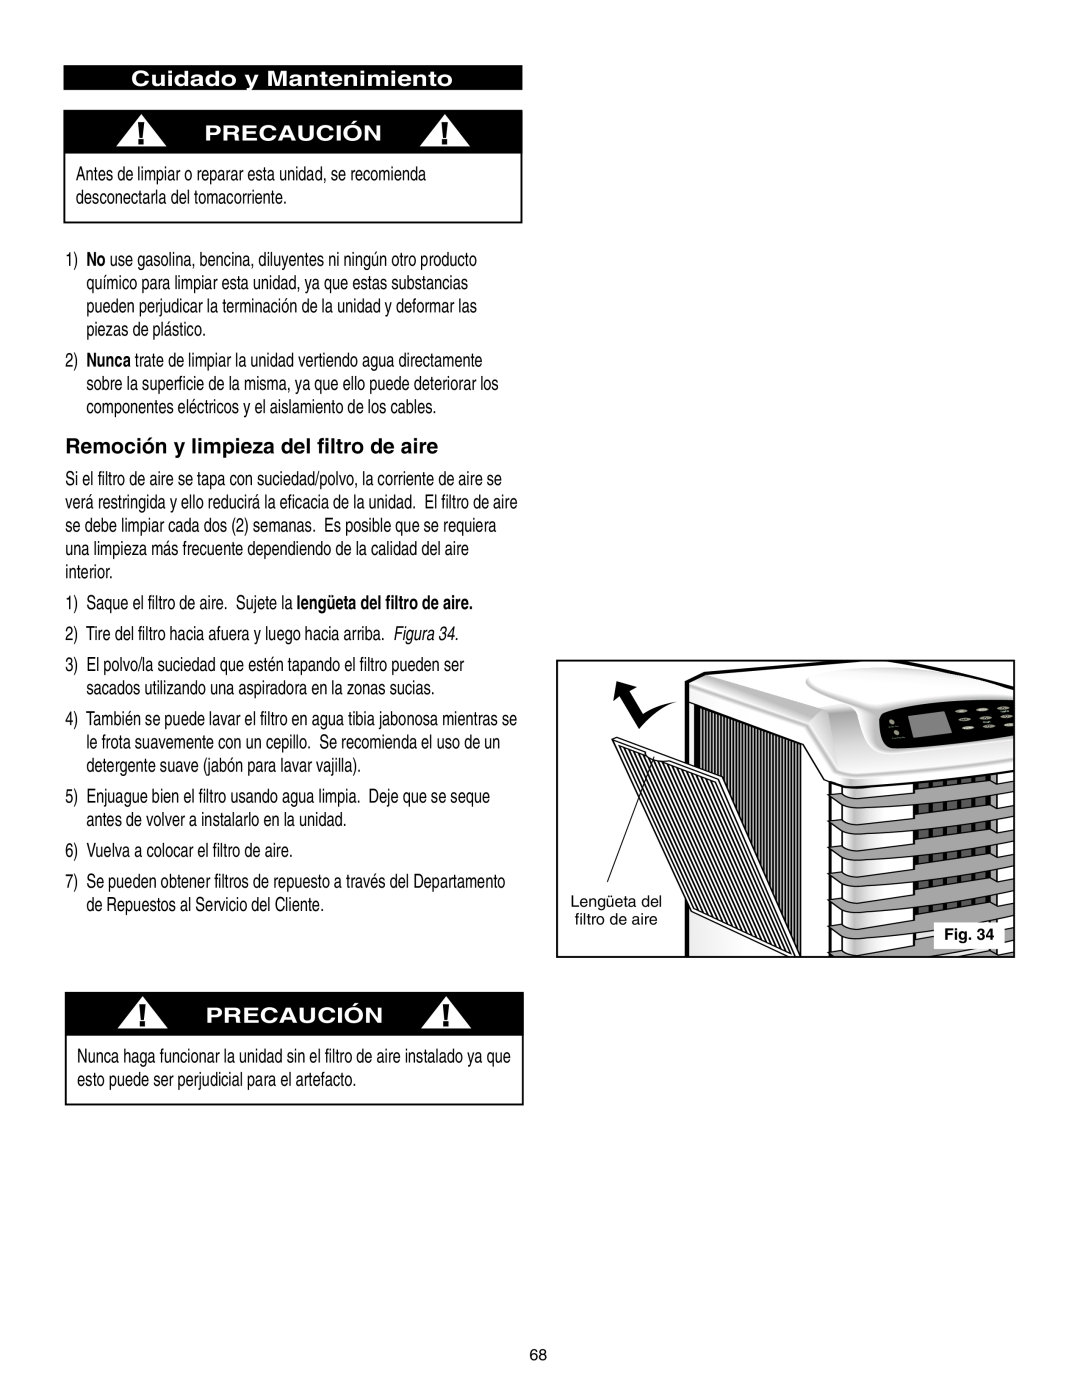 Danby SPAC8499 manual Cuidado y Mantenimiento PRECAUCIÓN, Remoción y limpieza del filtro de aire, Precaución 